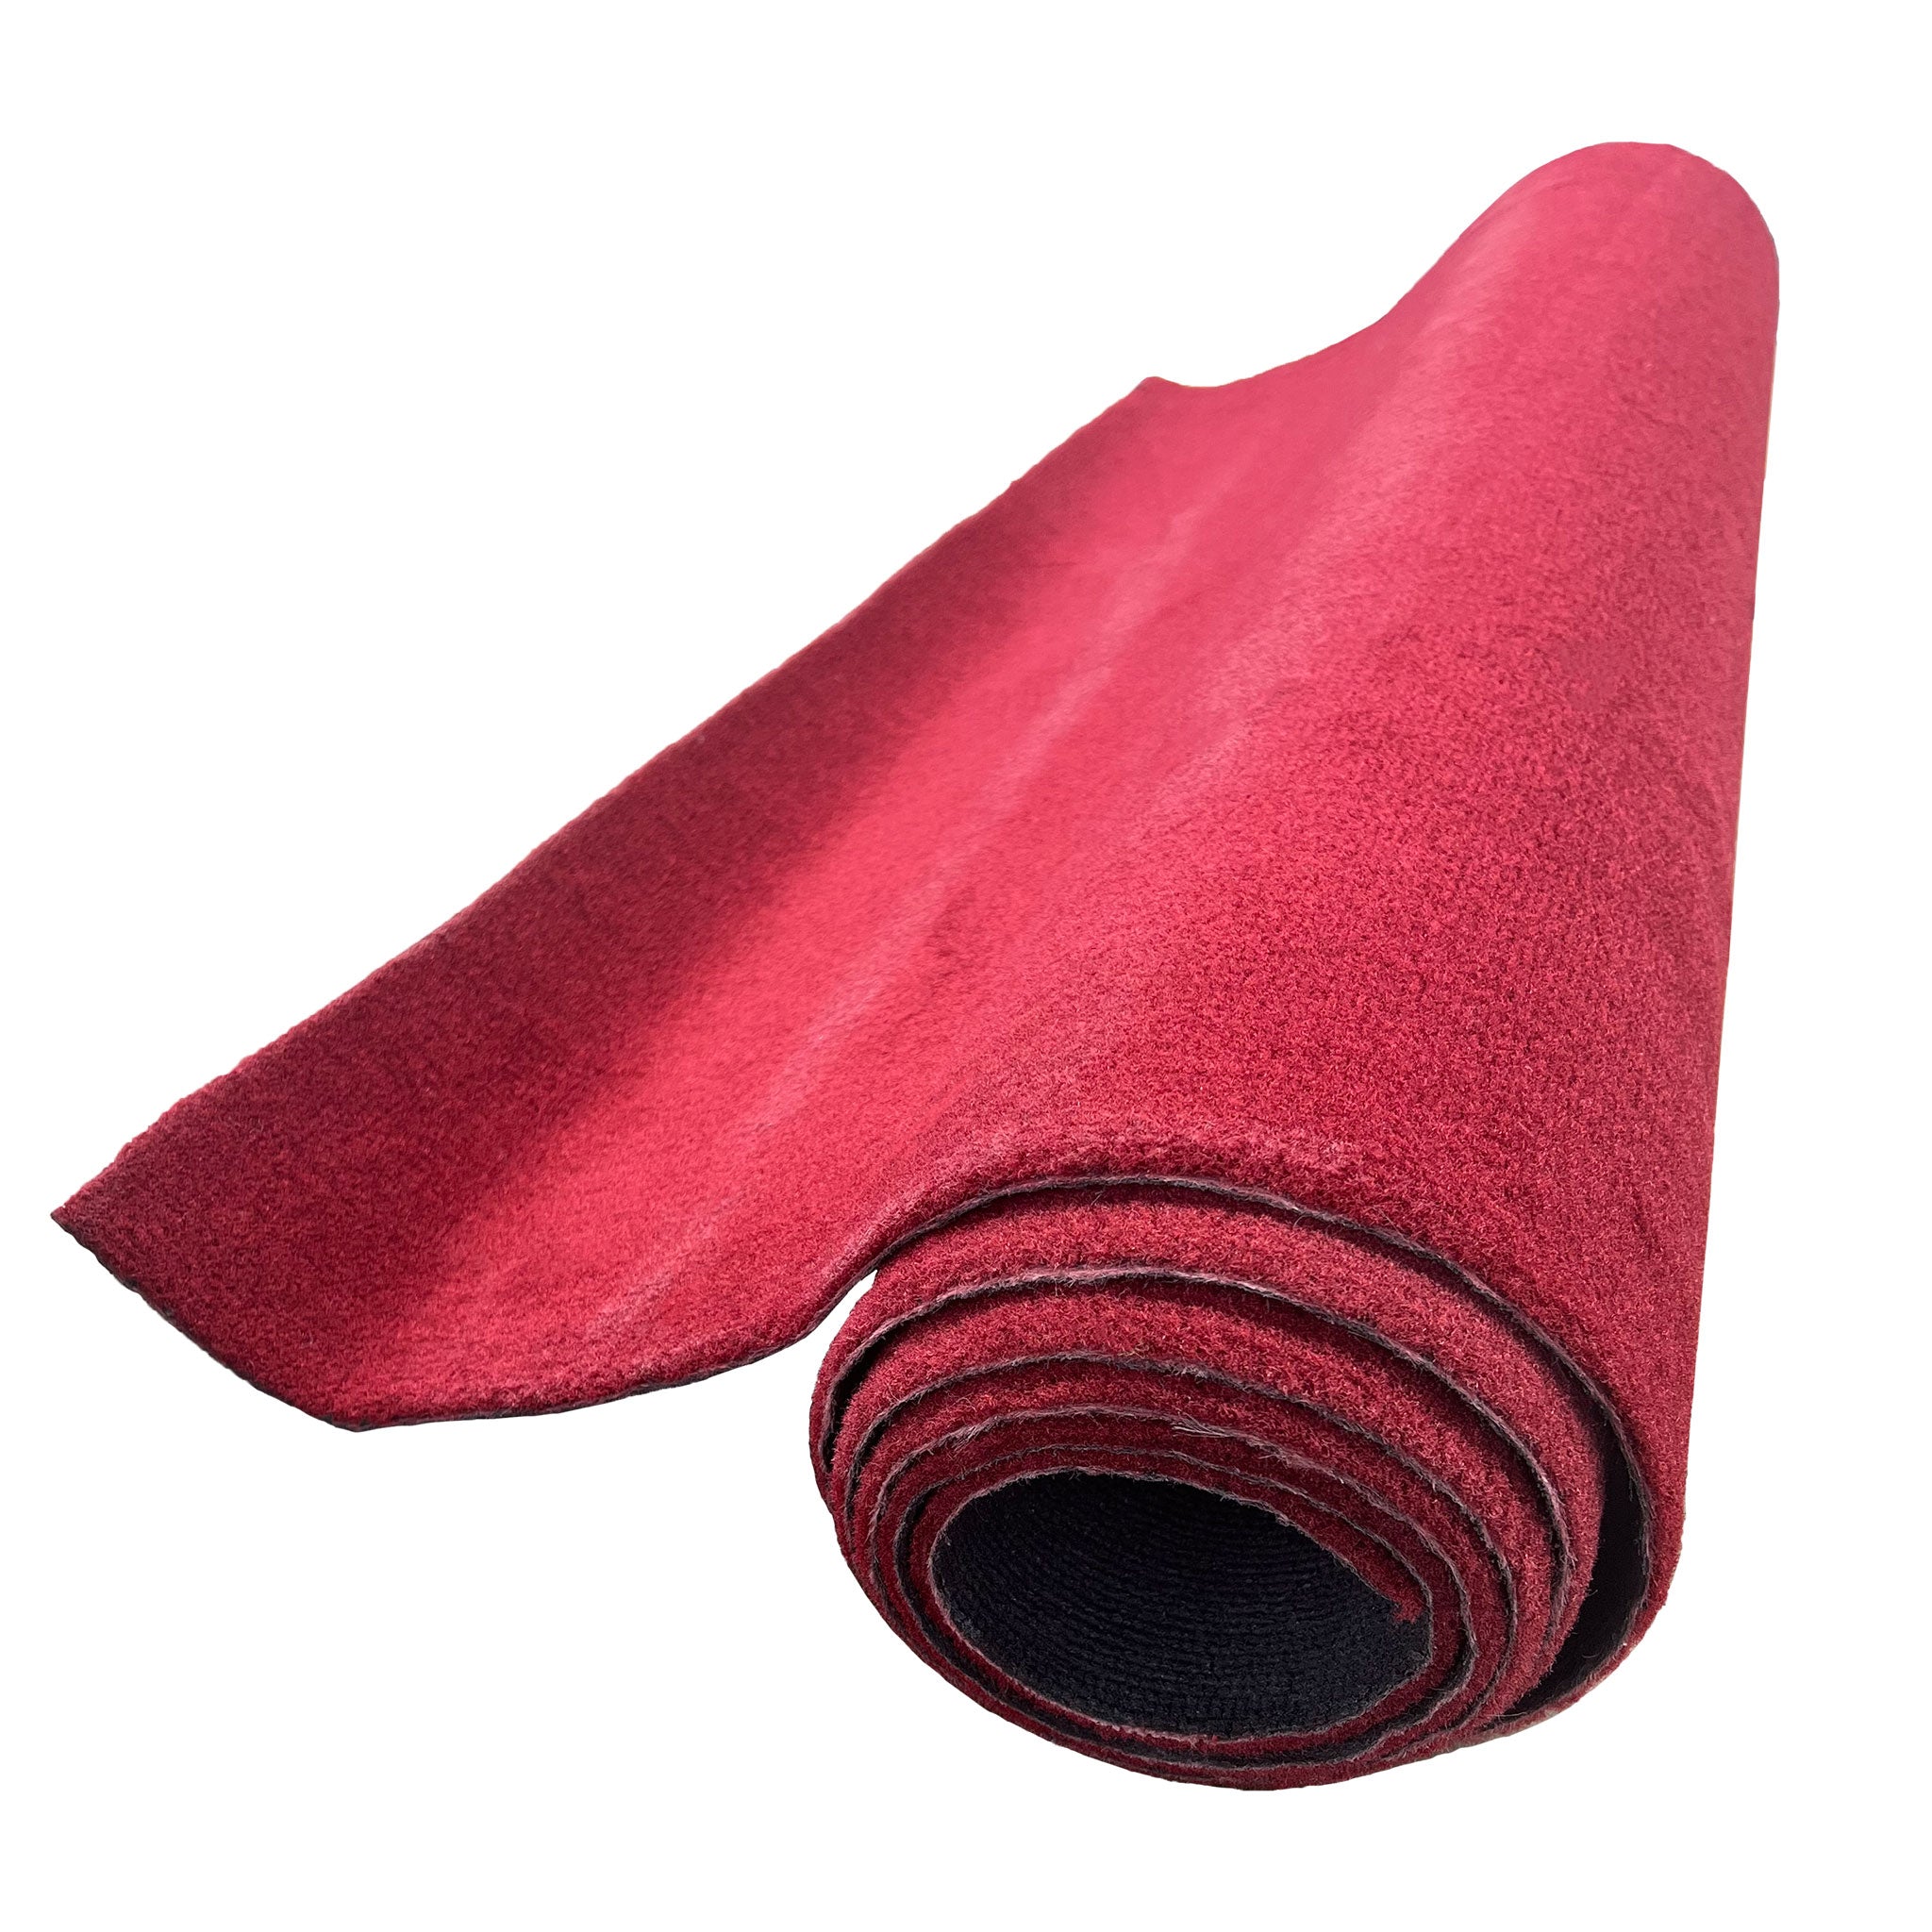 Essex Carpet Material - ACC Essex Cut Pile Material